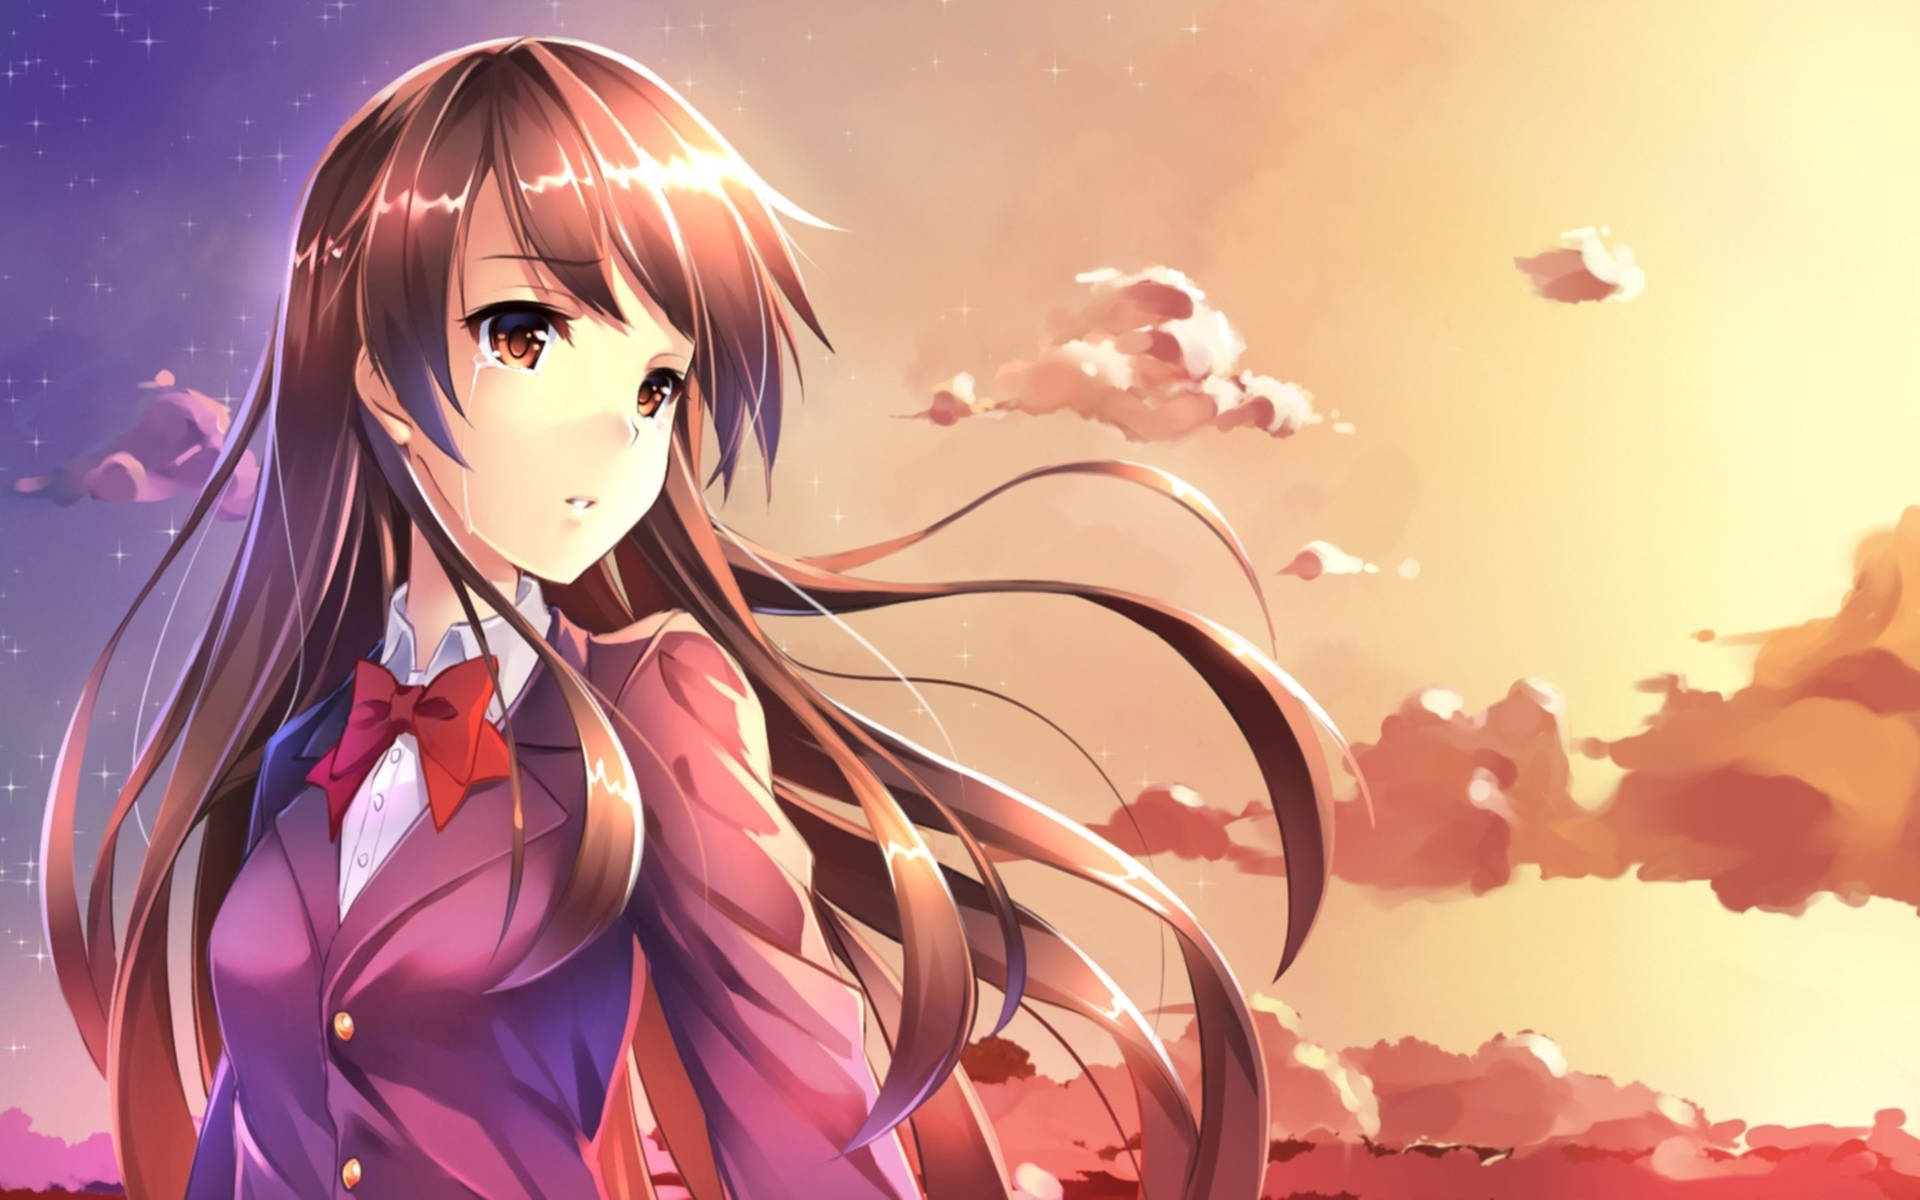 Anime Girl Crying Durimg Sunset Background